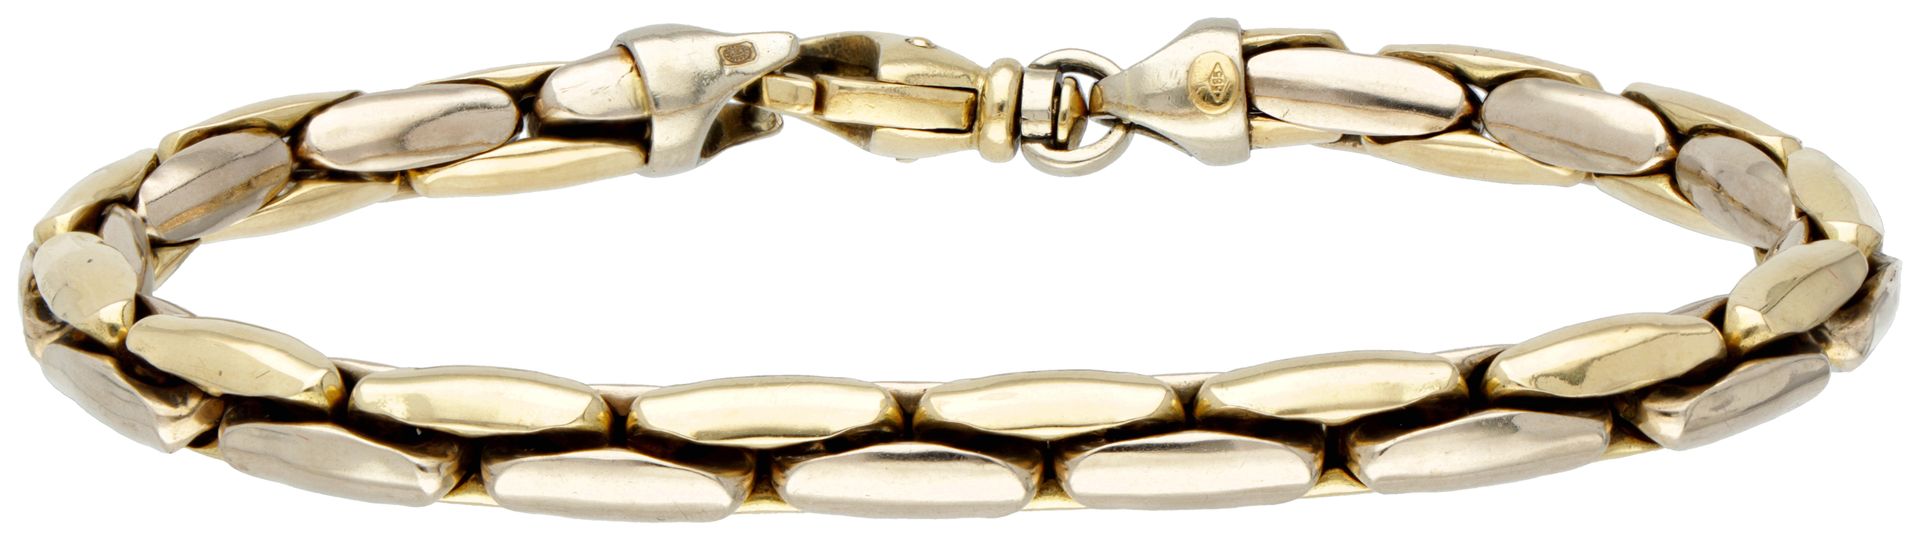 14K. Bicolor gold Cardano link bracelet. 印章：585。长：20.5厘米，链接宽度：0.6厘米。重量：18.14克。